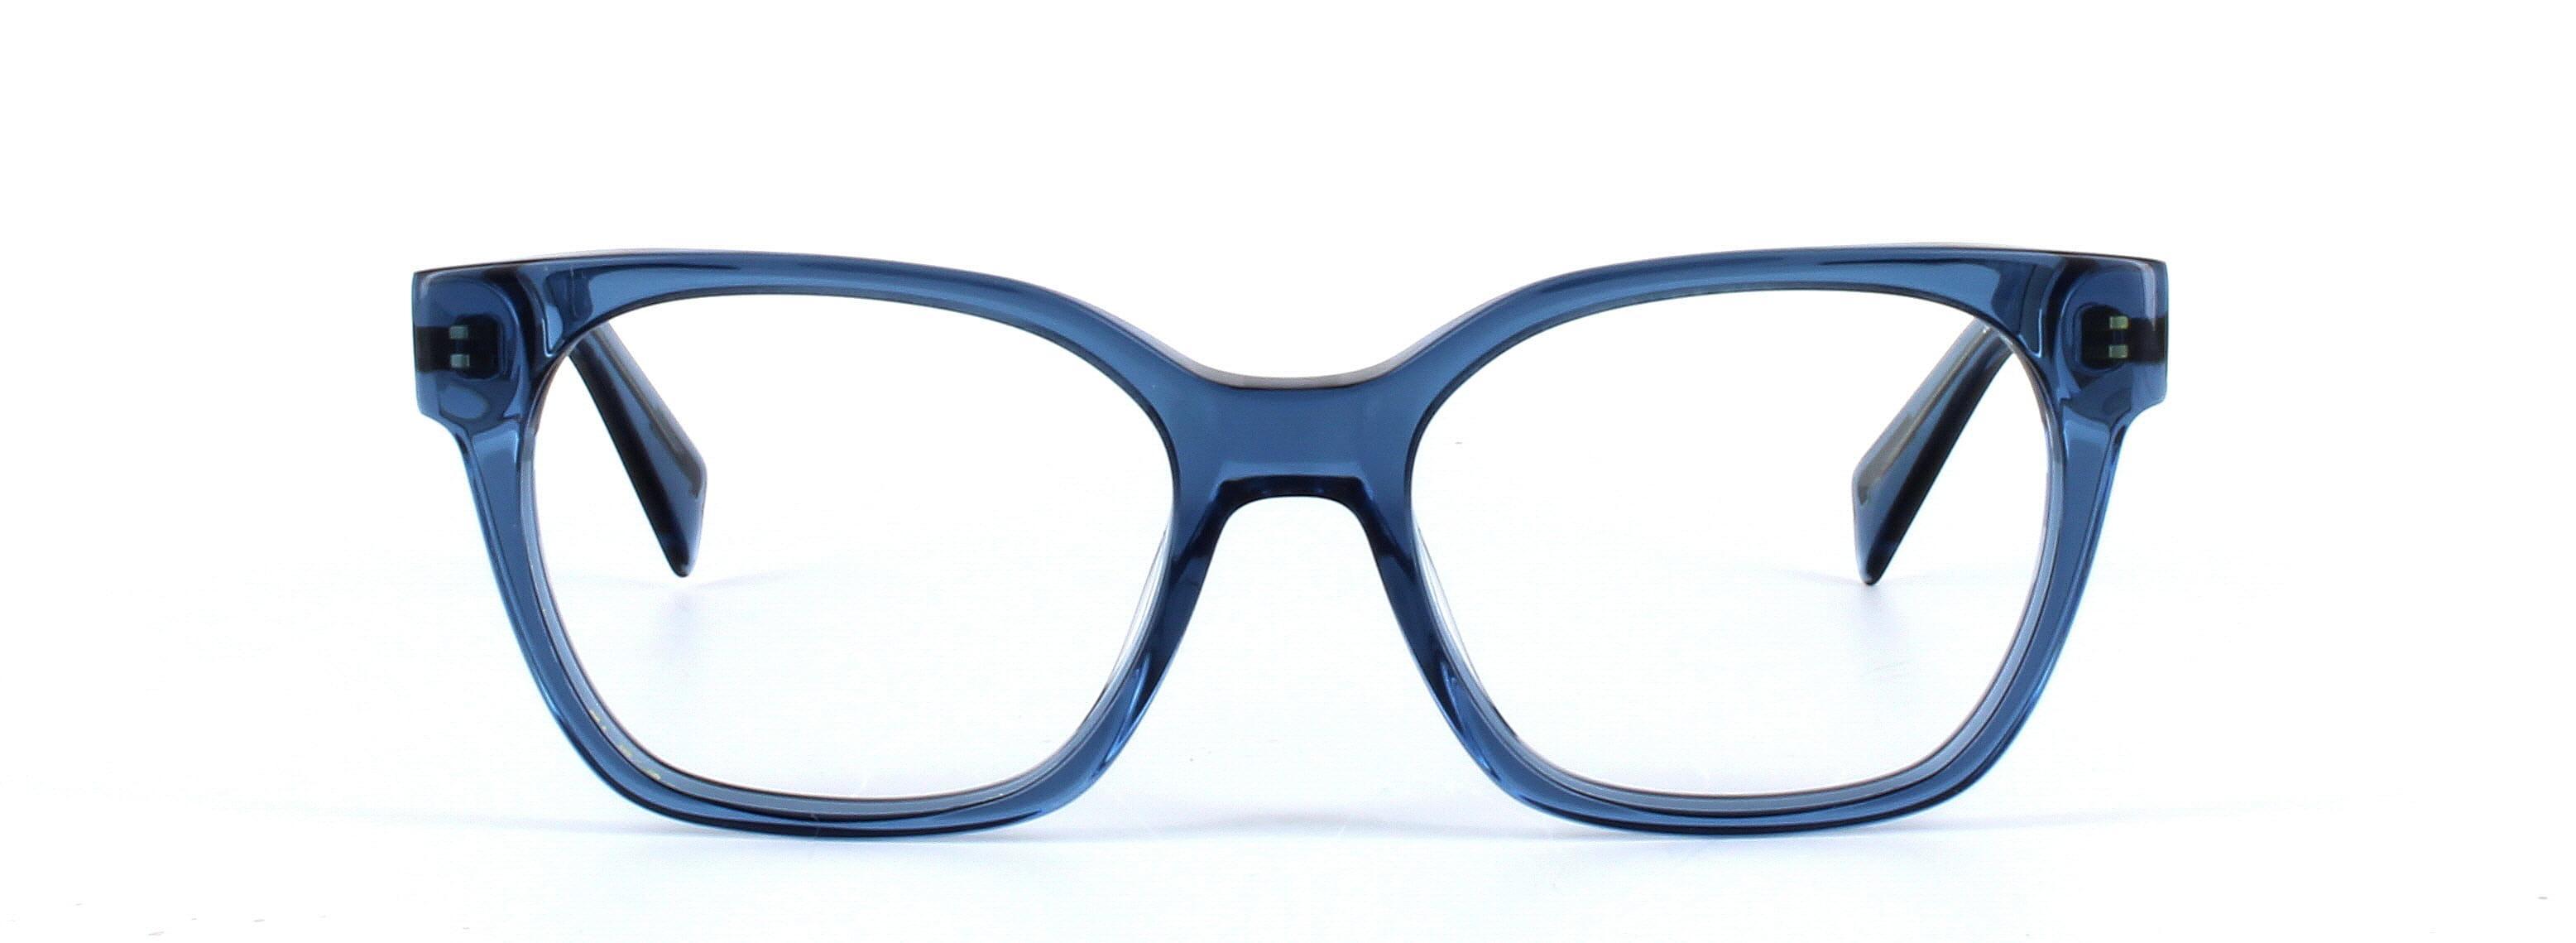 JUST CAVALLI (JC0801) Blue Full Rim Square Acetate Glasses - Image View 5